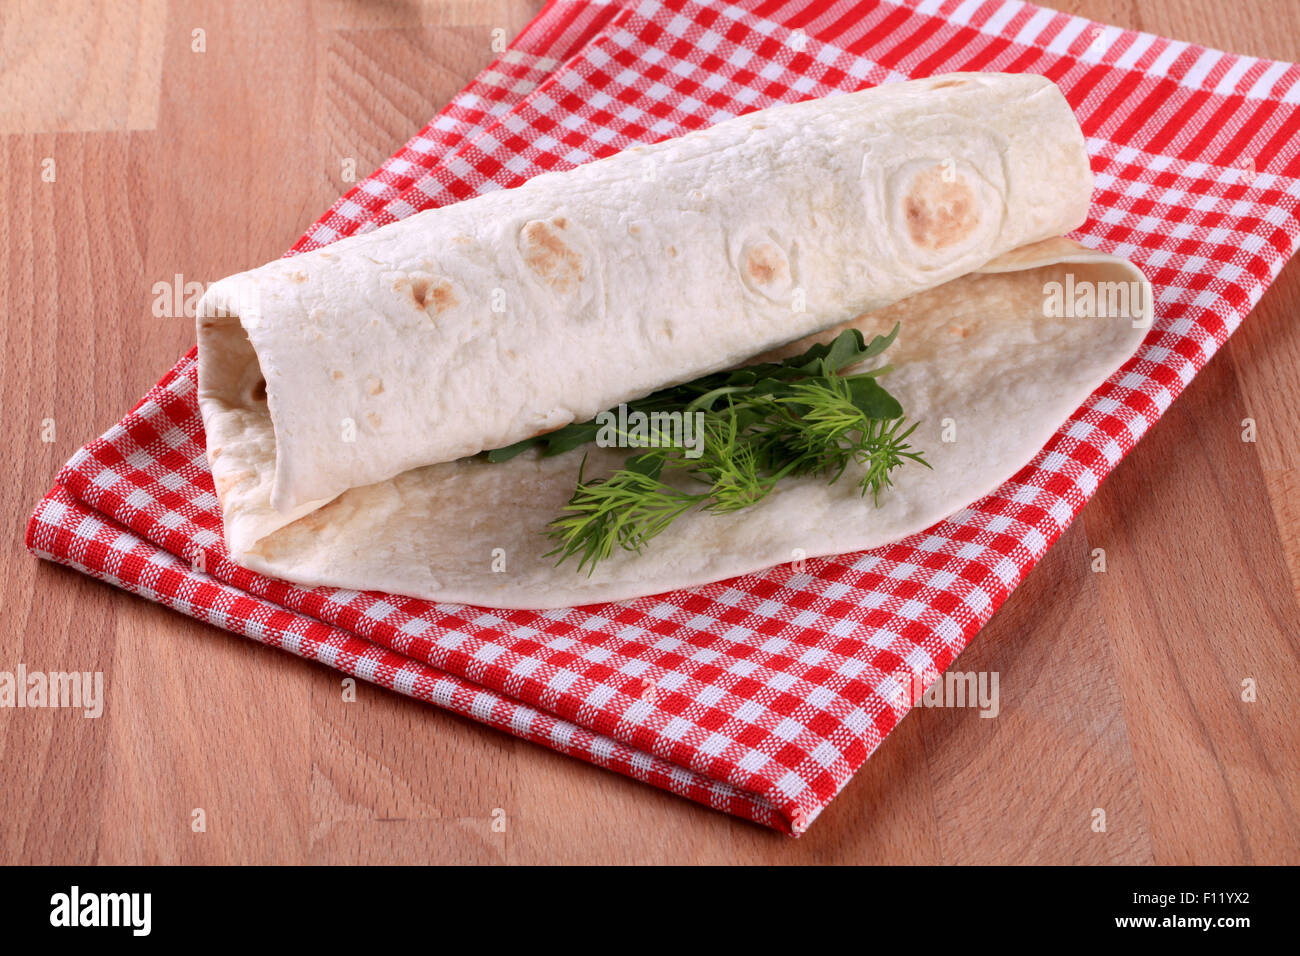 Burrito - Wheat flour tortilla wrapped around a filling Stock Photo